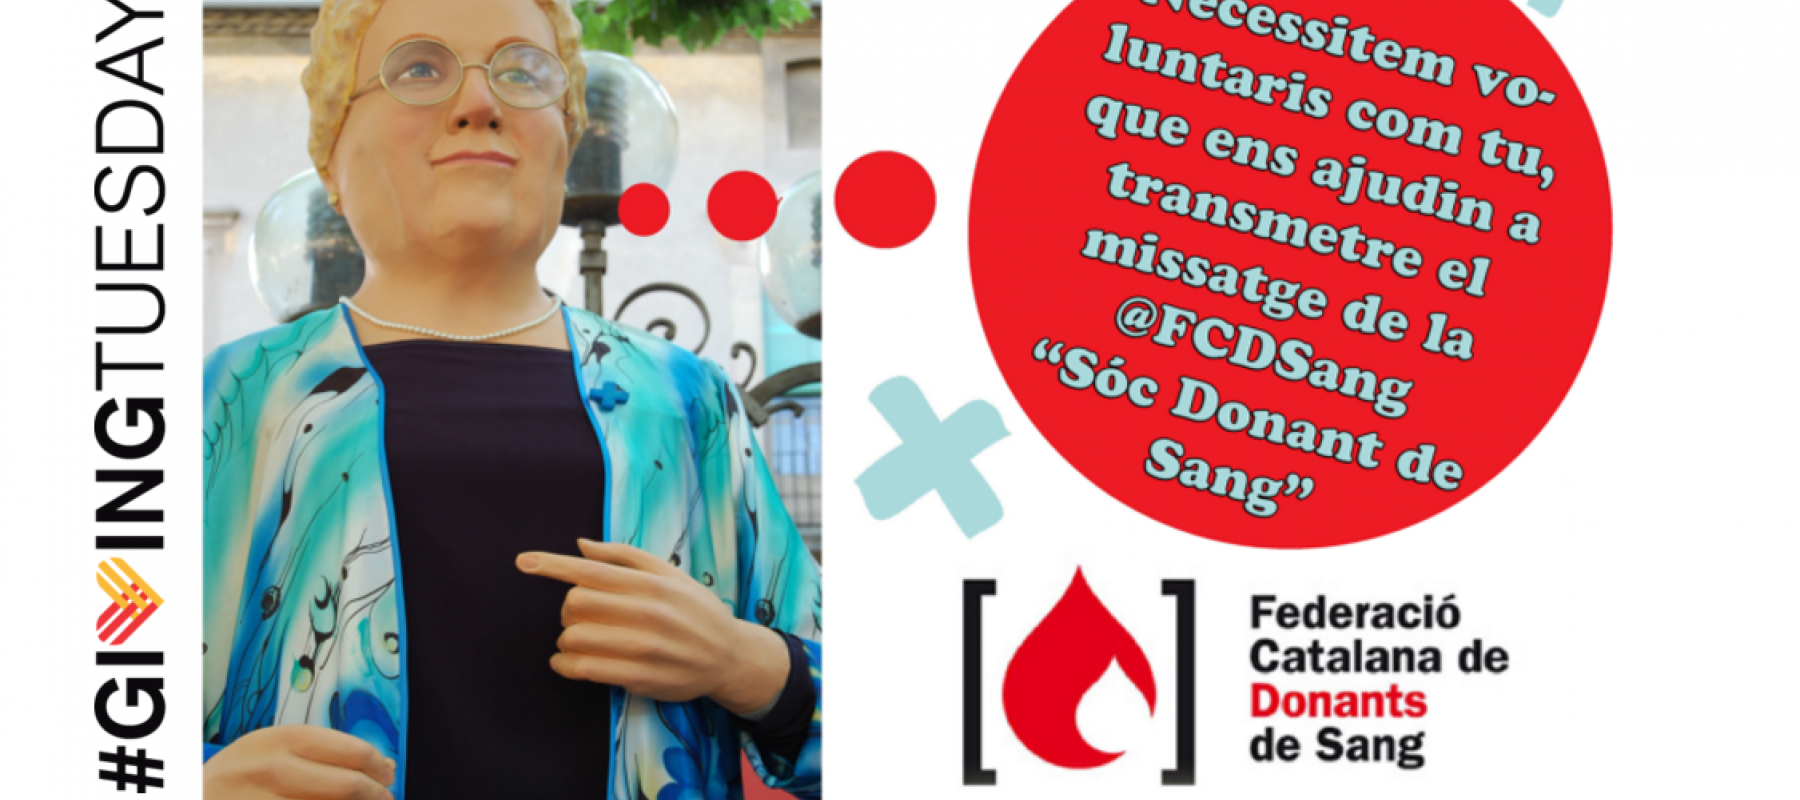 LA FEDERACIÓ CATALANA DE DONANTS DE SANG PARTICIPA AL #GIVINGTUESDAY